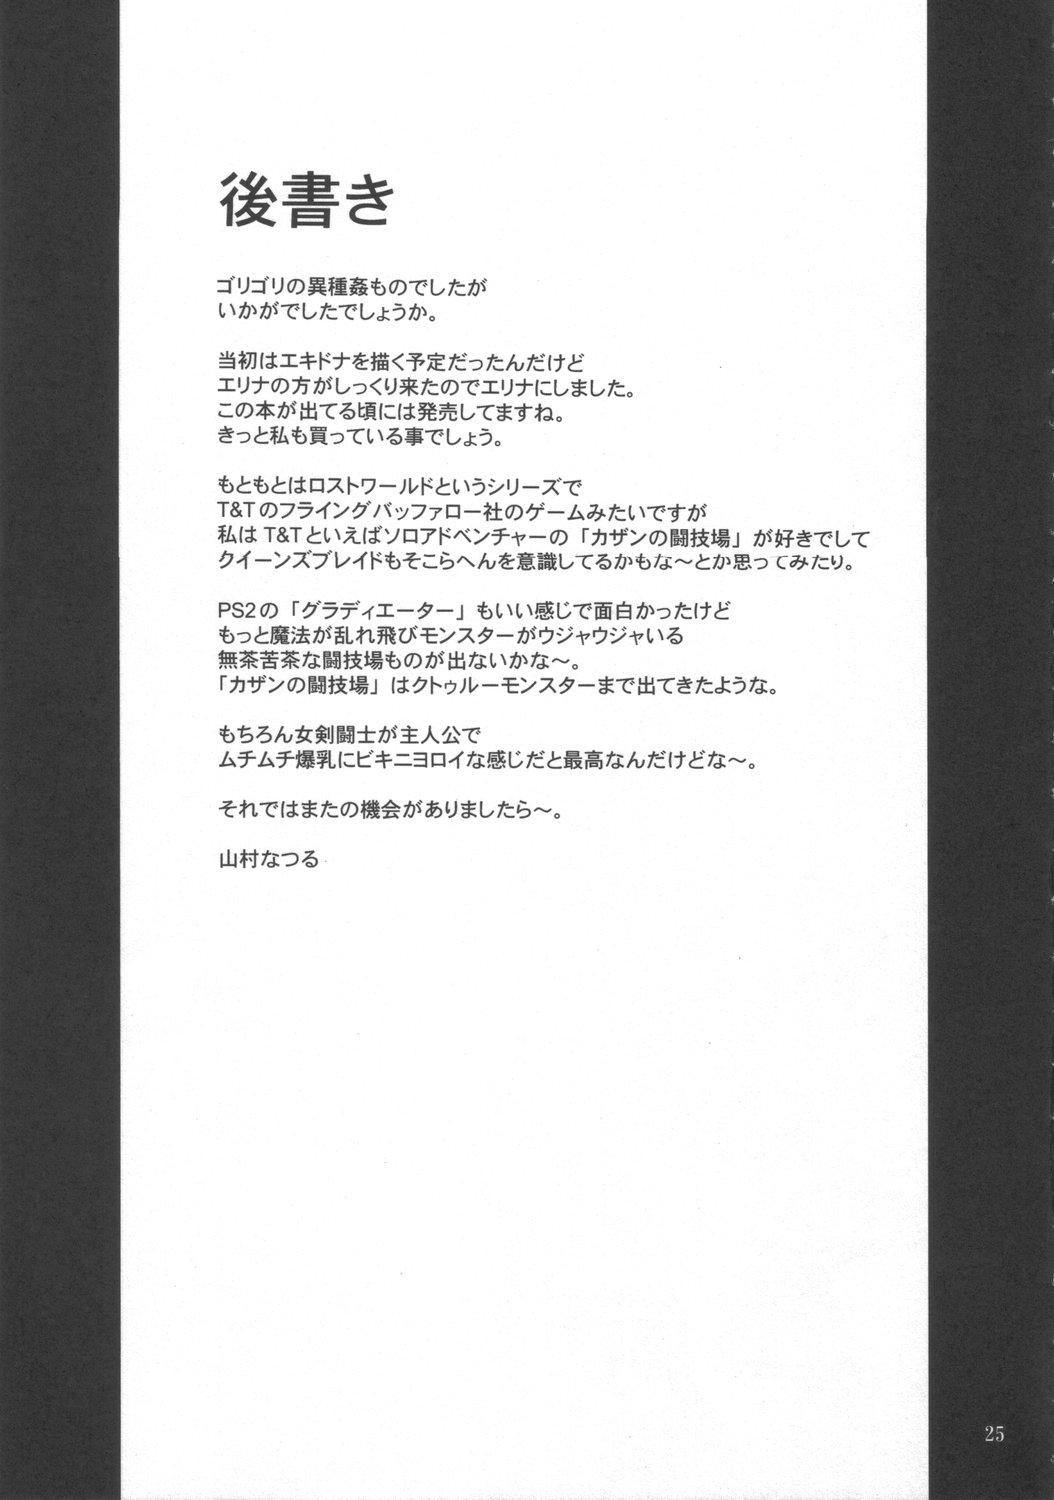 Alone Injoku no Senshi Leina & Elina - Queens blade Playing - Page 24